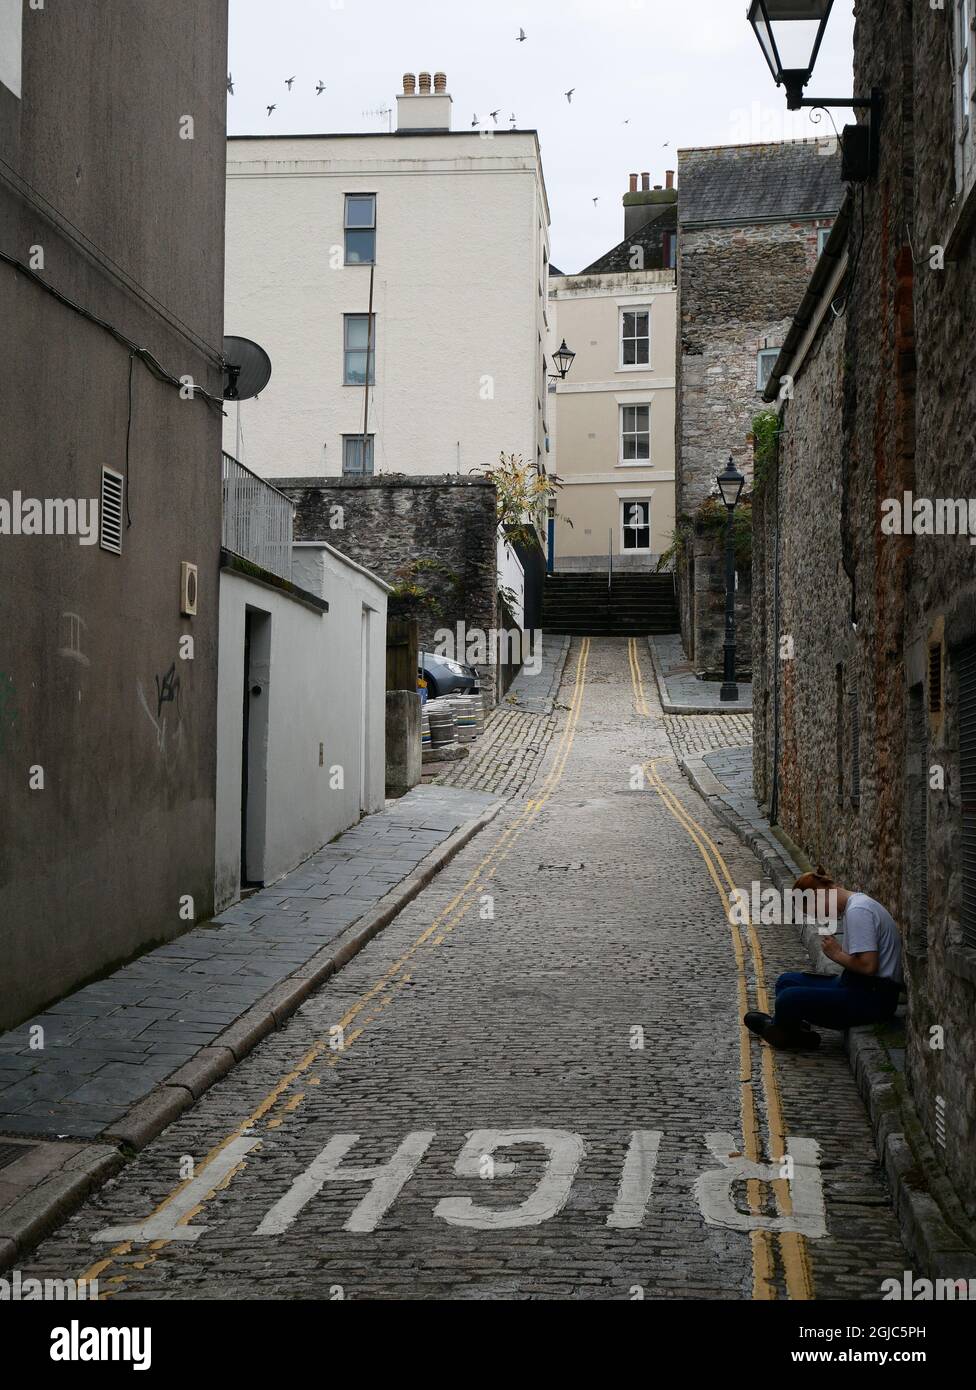 Jeune femme assise seule sur le trottoir dans une petite rue. Barbican, Plymouth, Devon, Royaume-Uni Banque D'Images